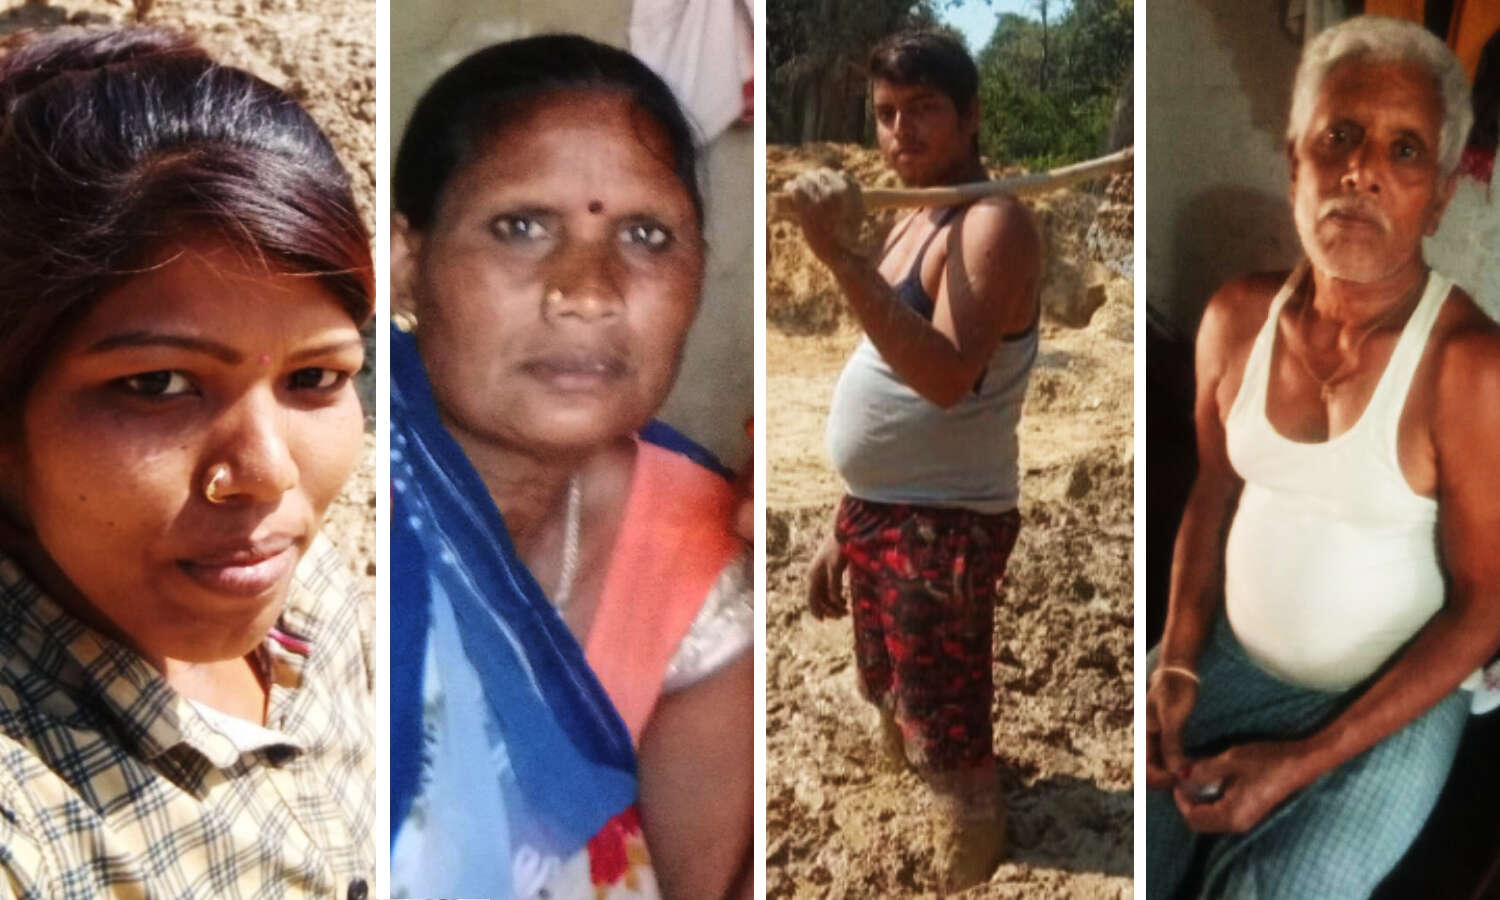 Bilaspur News : बंधुआ मजदूरी : लठैतों और बंदूक के दम पर मजदूरों को बंधक बनाकर लिया जा रहा था काम, फिर ऐसे छुड़ाए गए